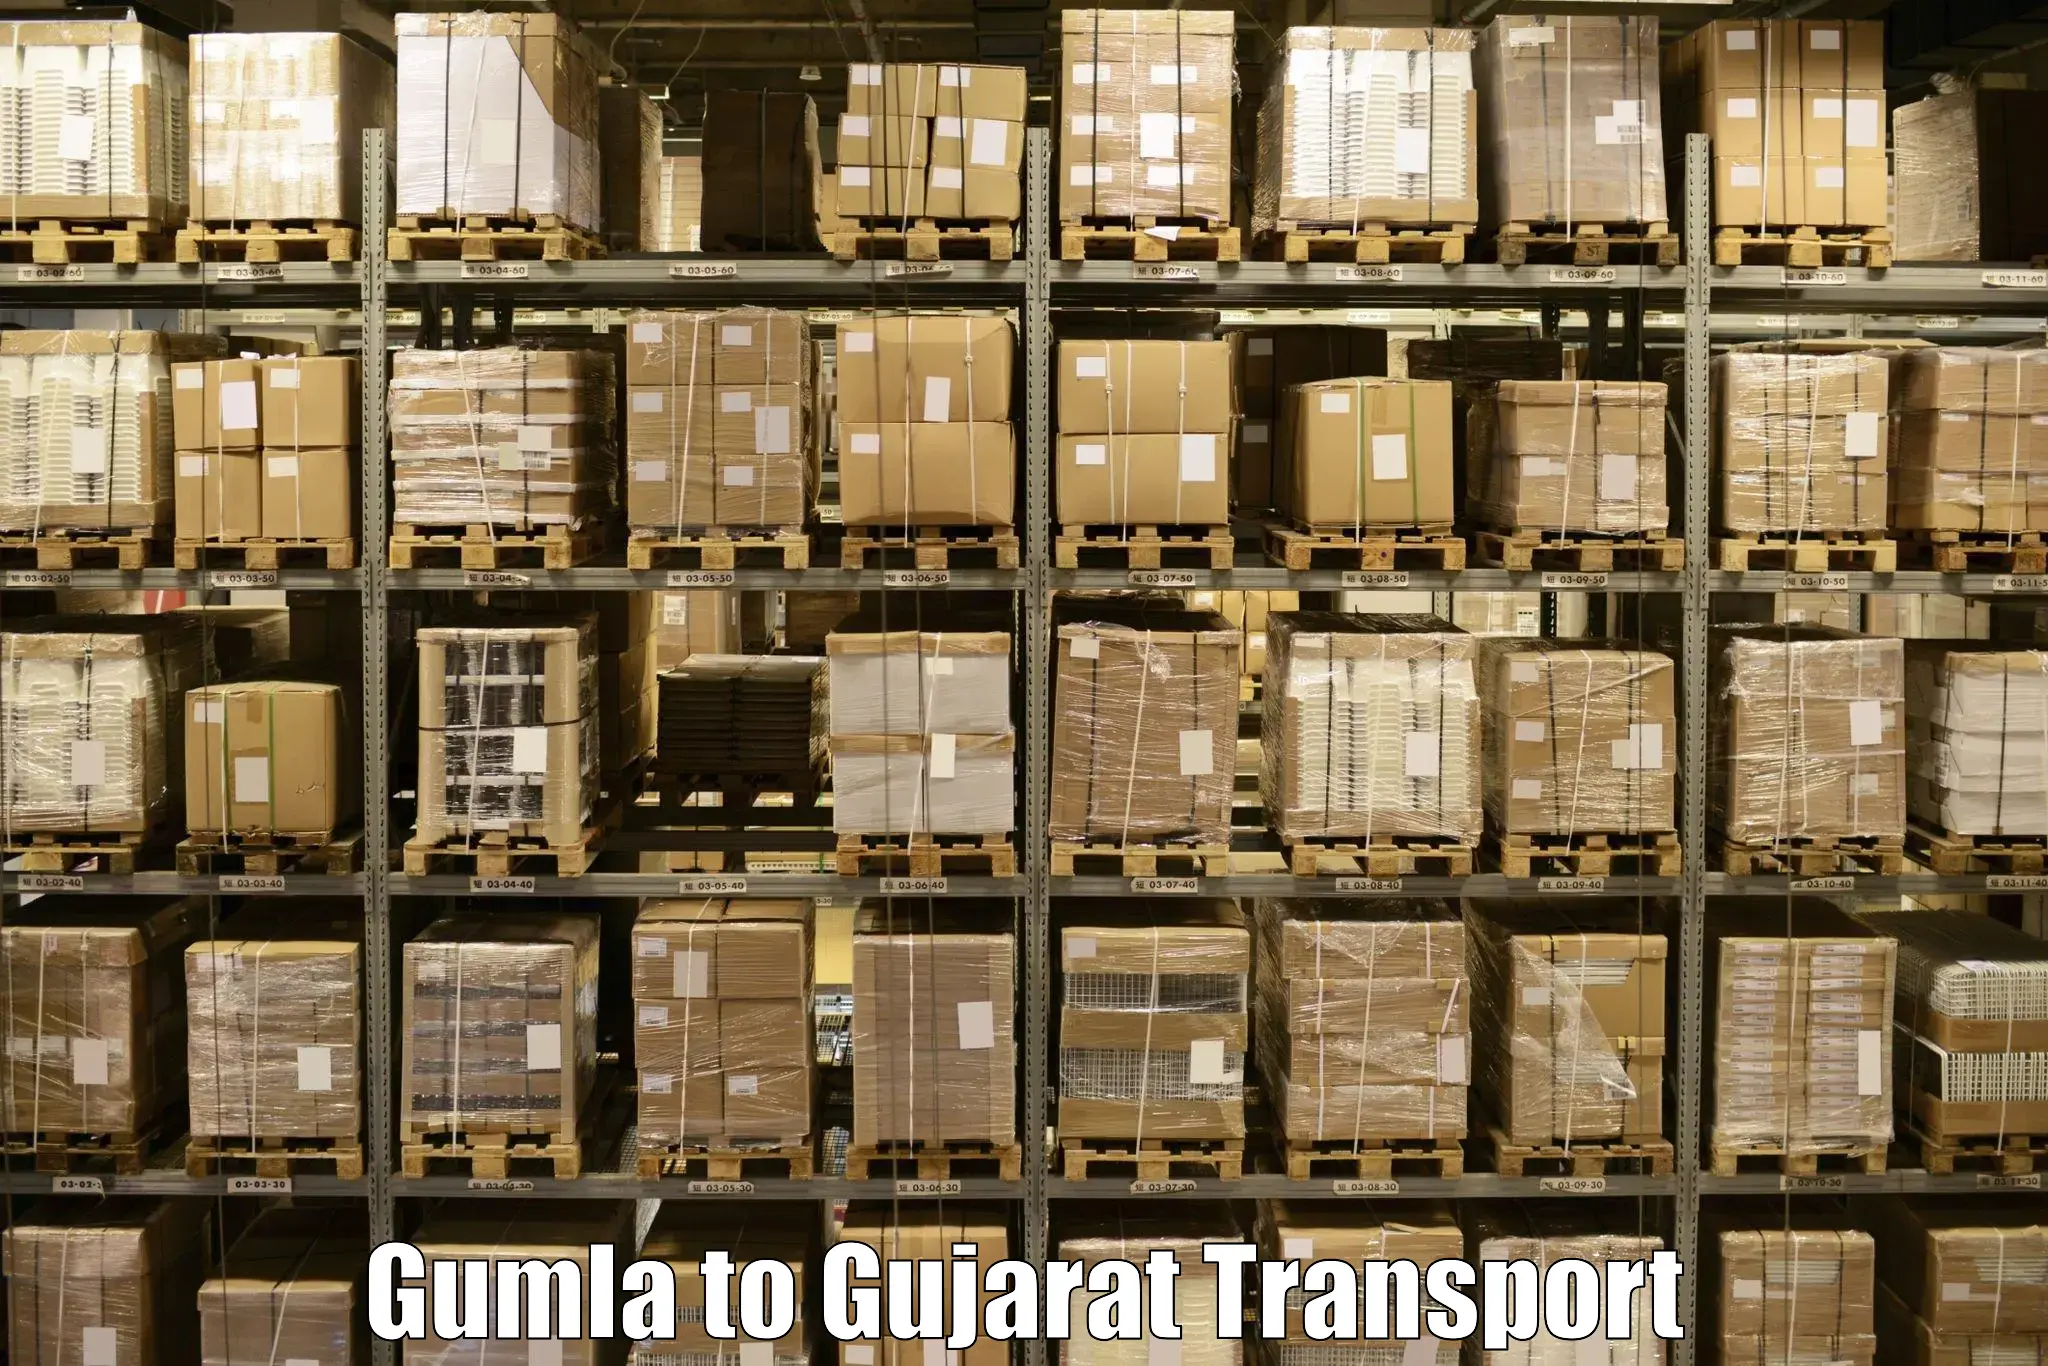 Express transport services Gumla to Ankleshwar